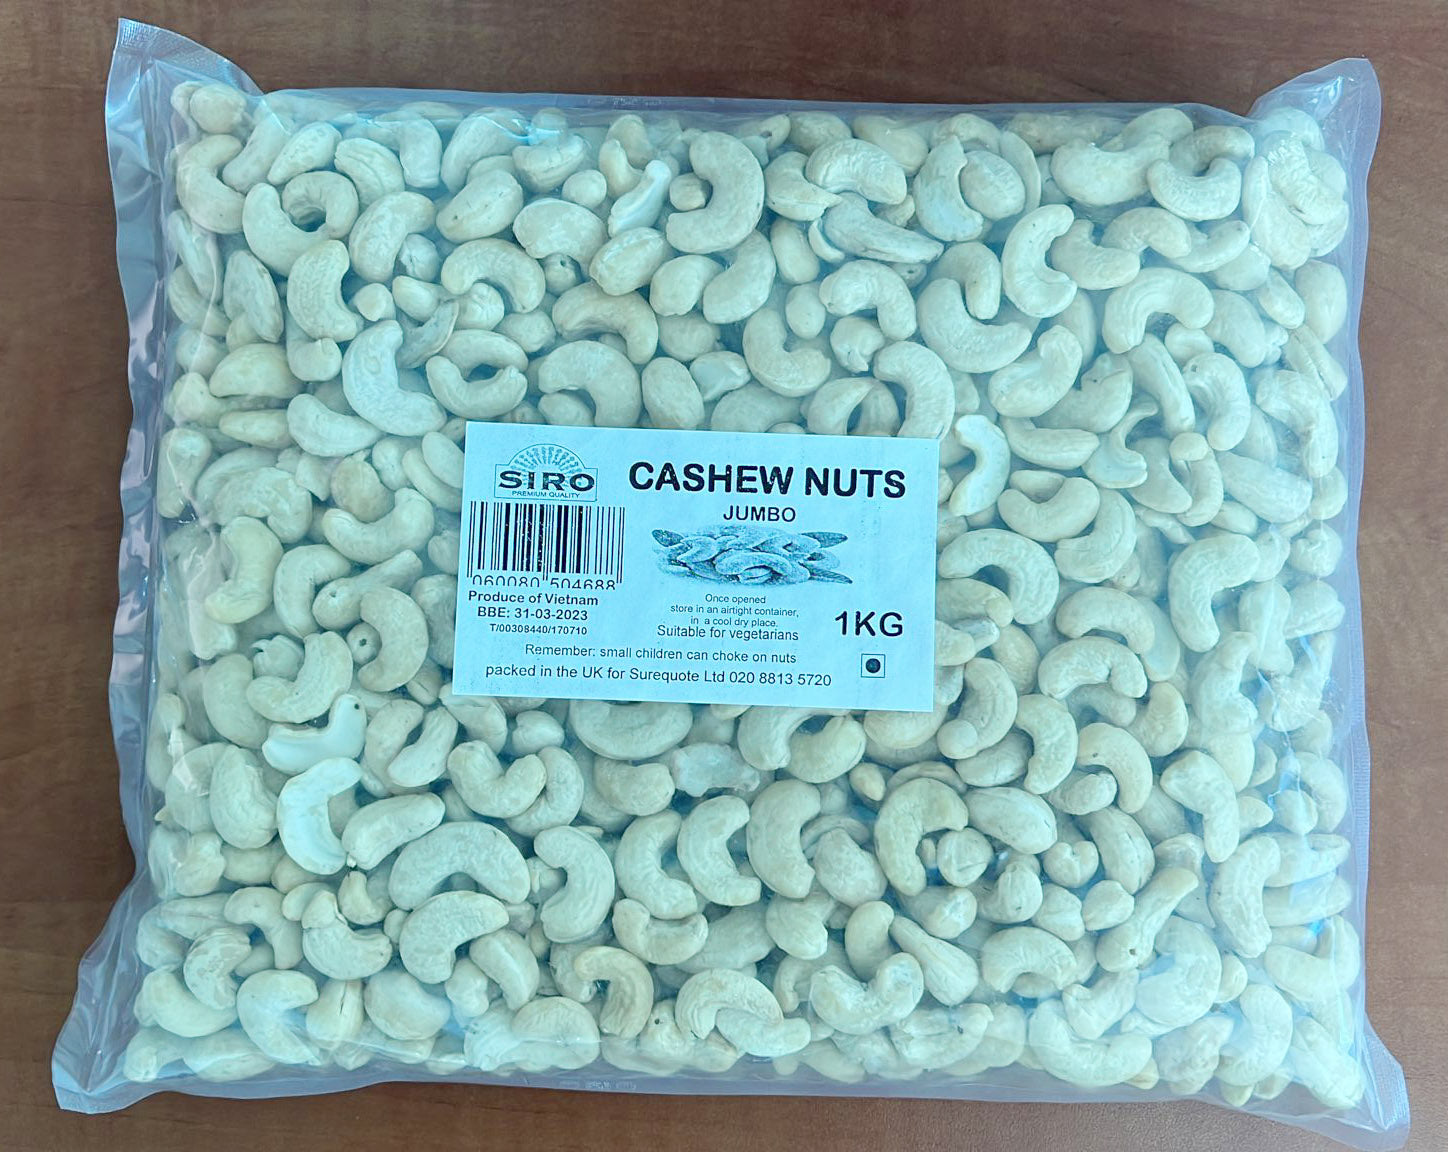 Siro Cashew Nuts Jumbo 1kg